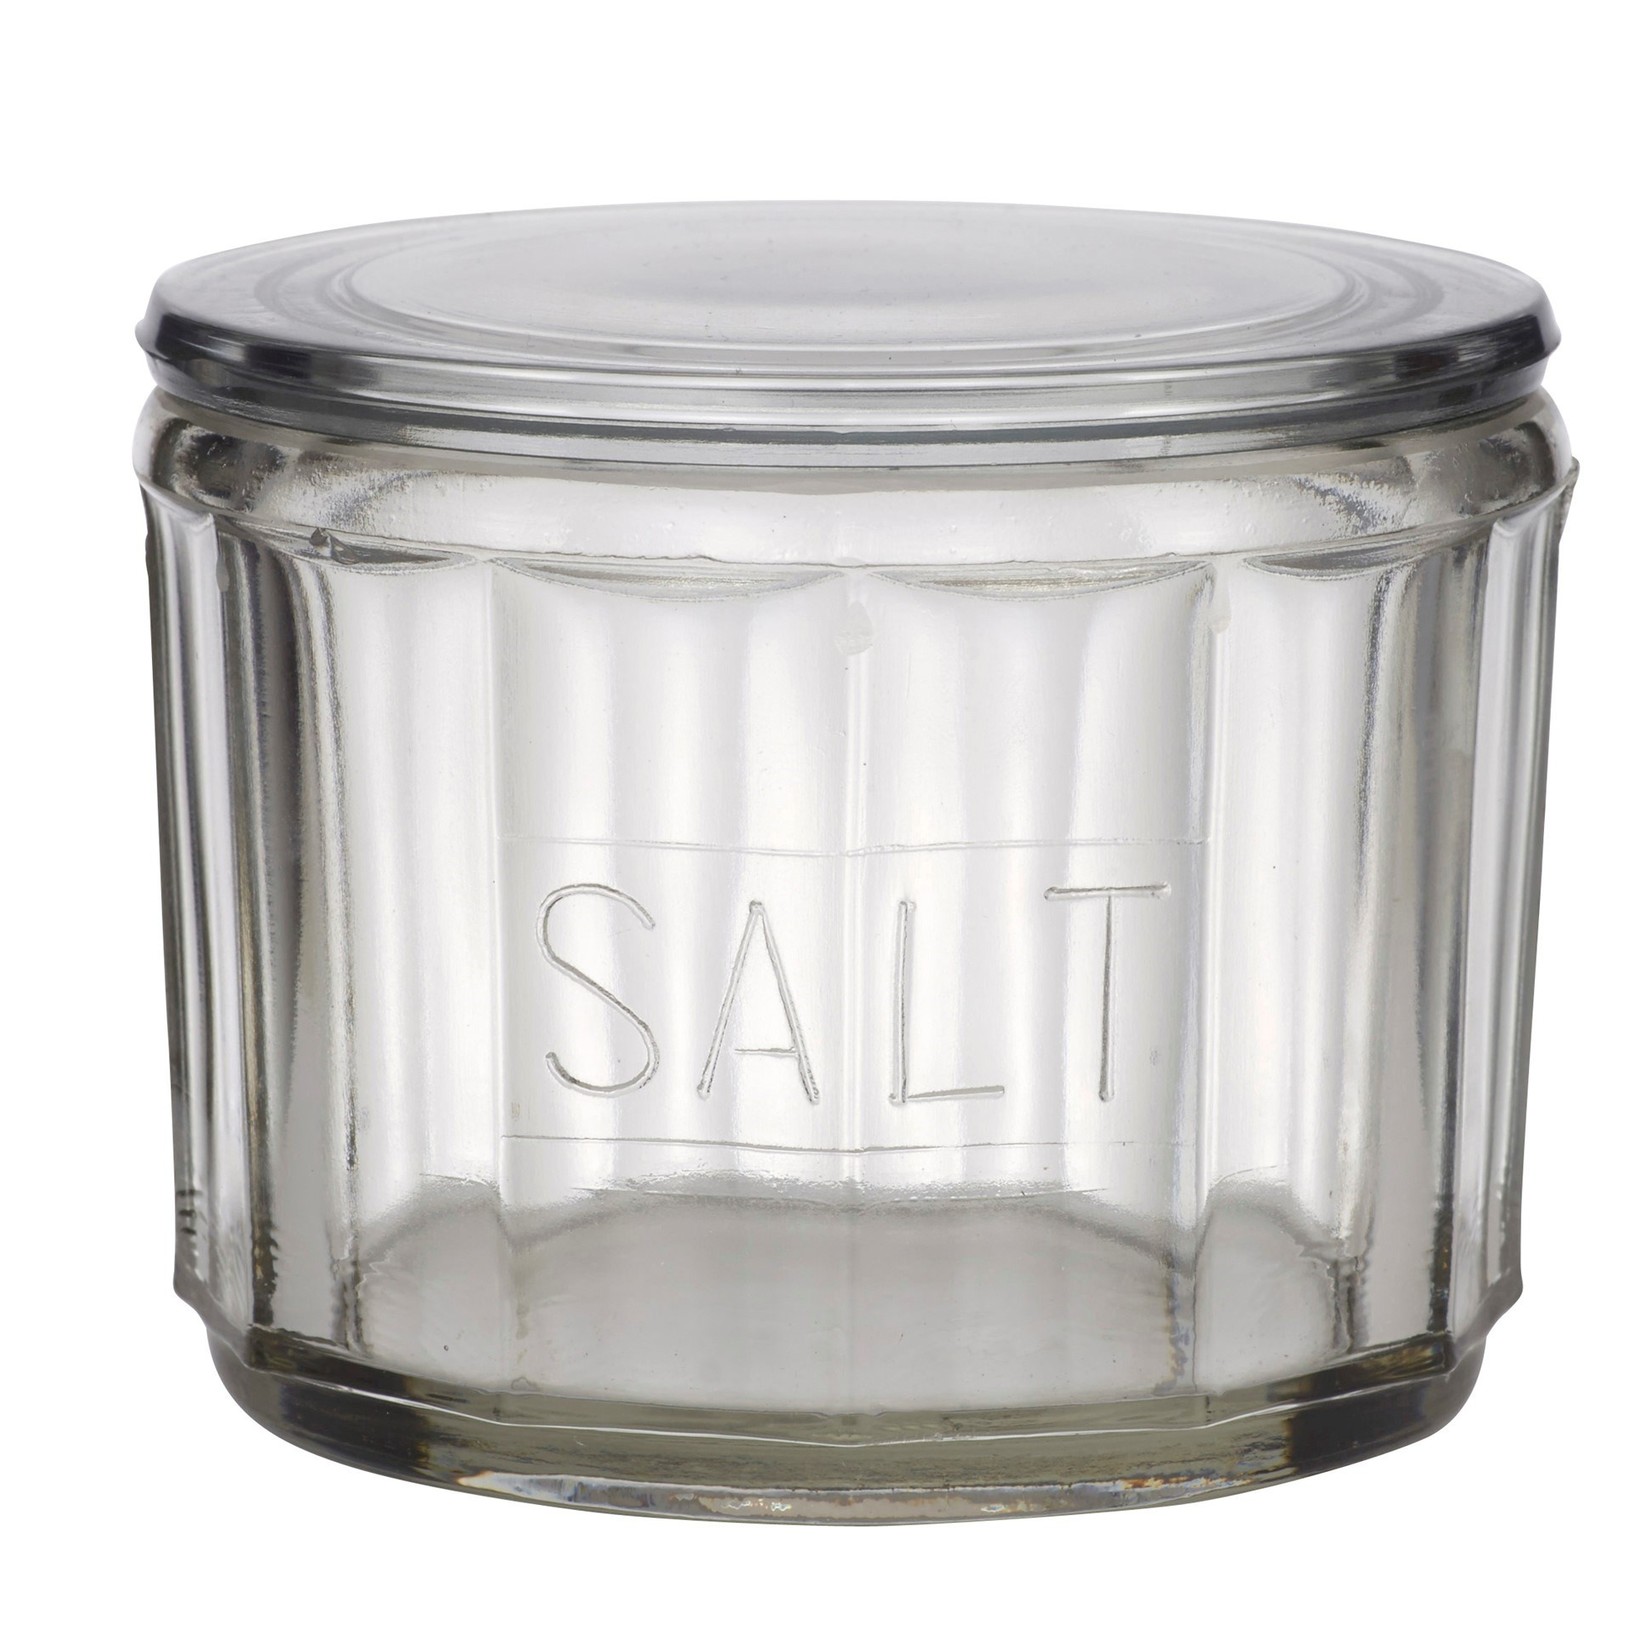 Salt Jar - Hemingway Glass Salt Jar